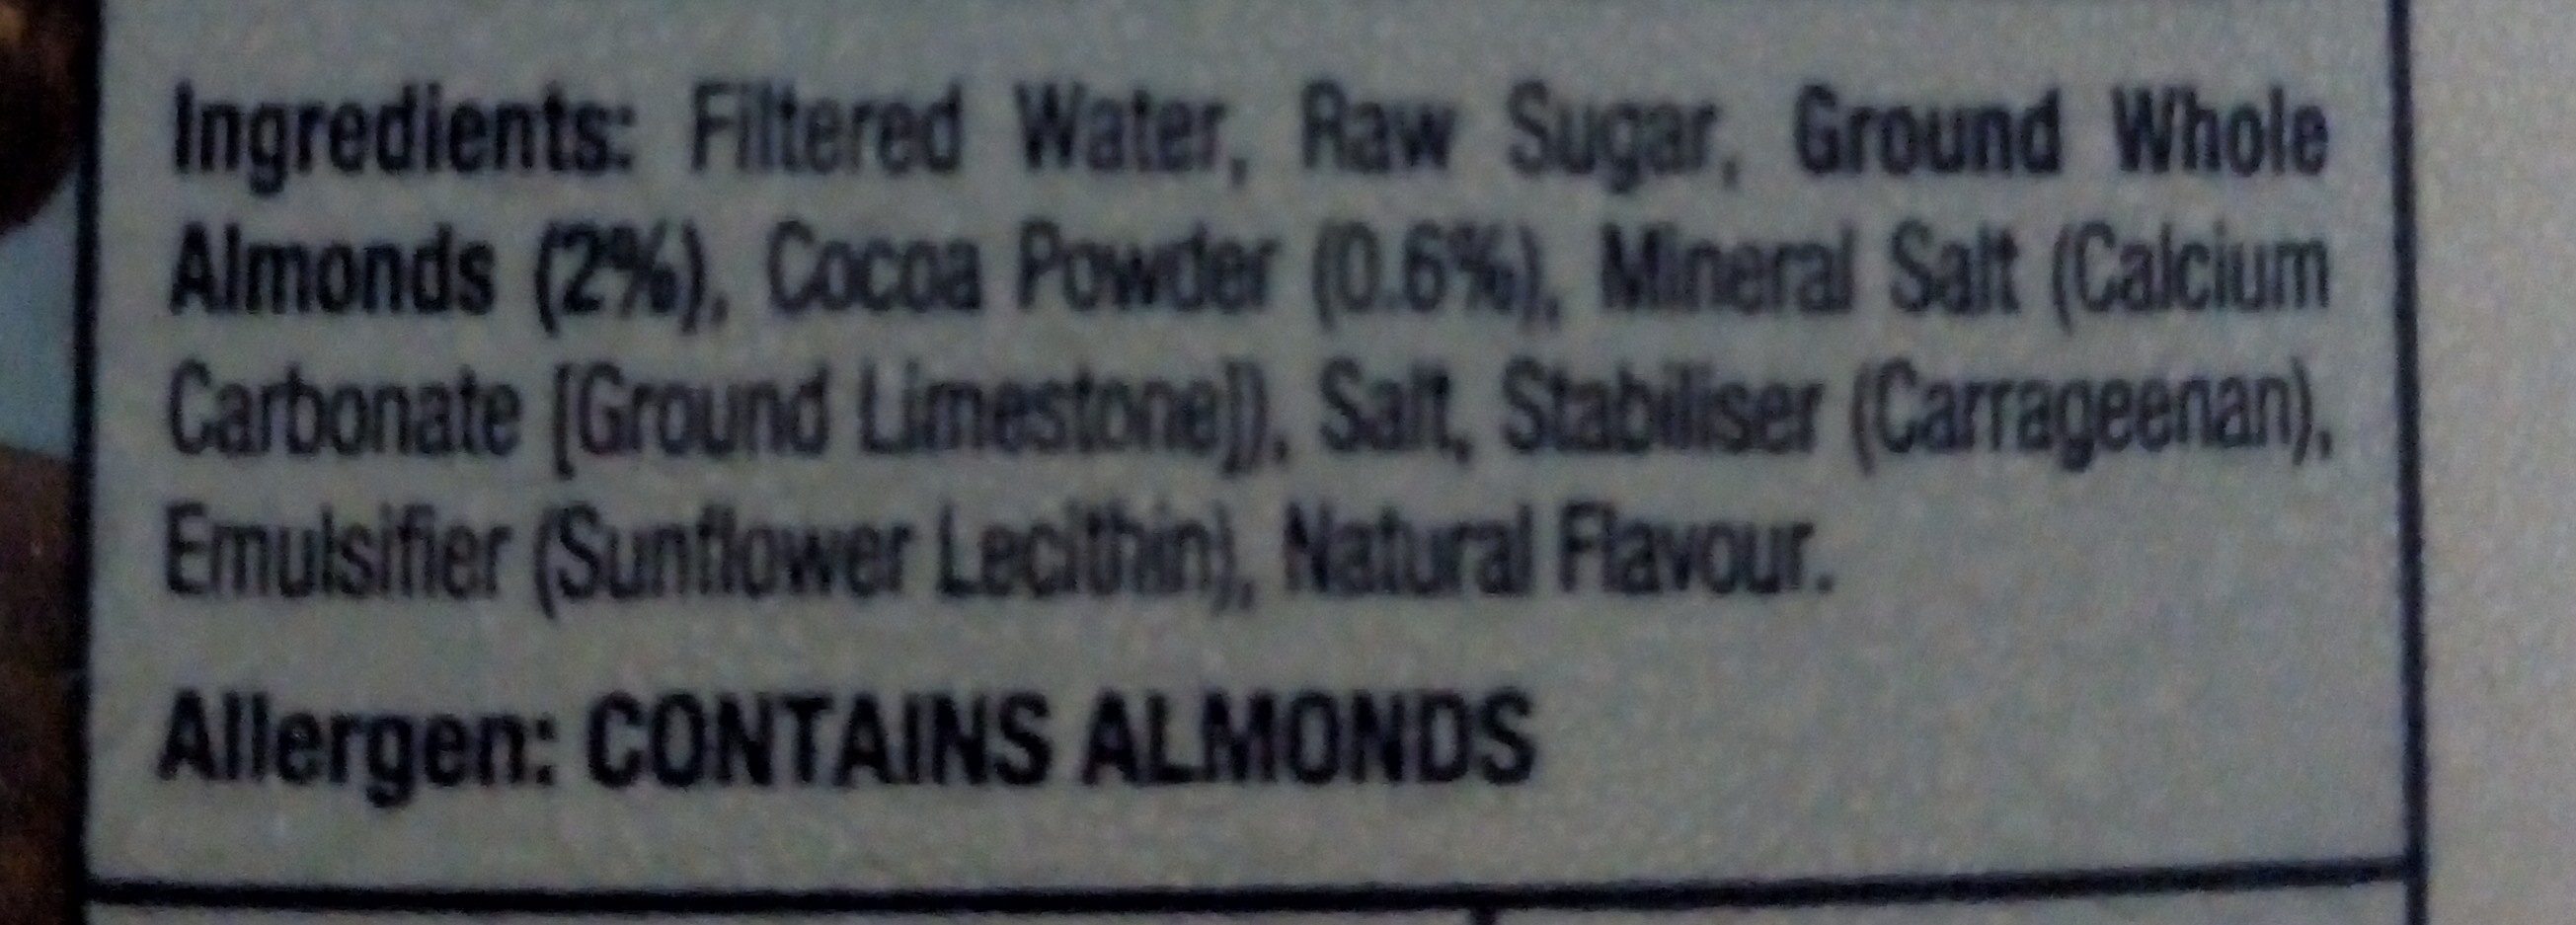 Almond Breeze Chocolate - Ingredients - en